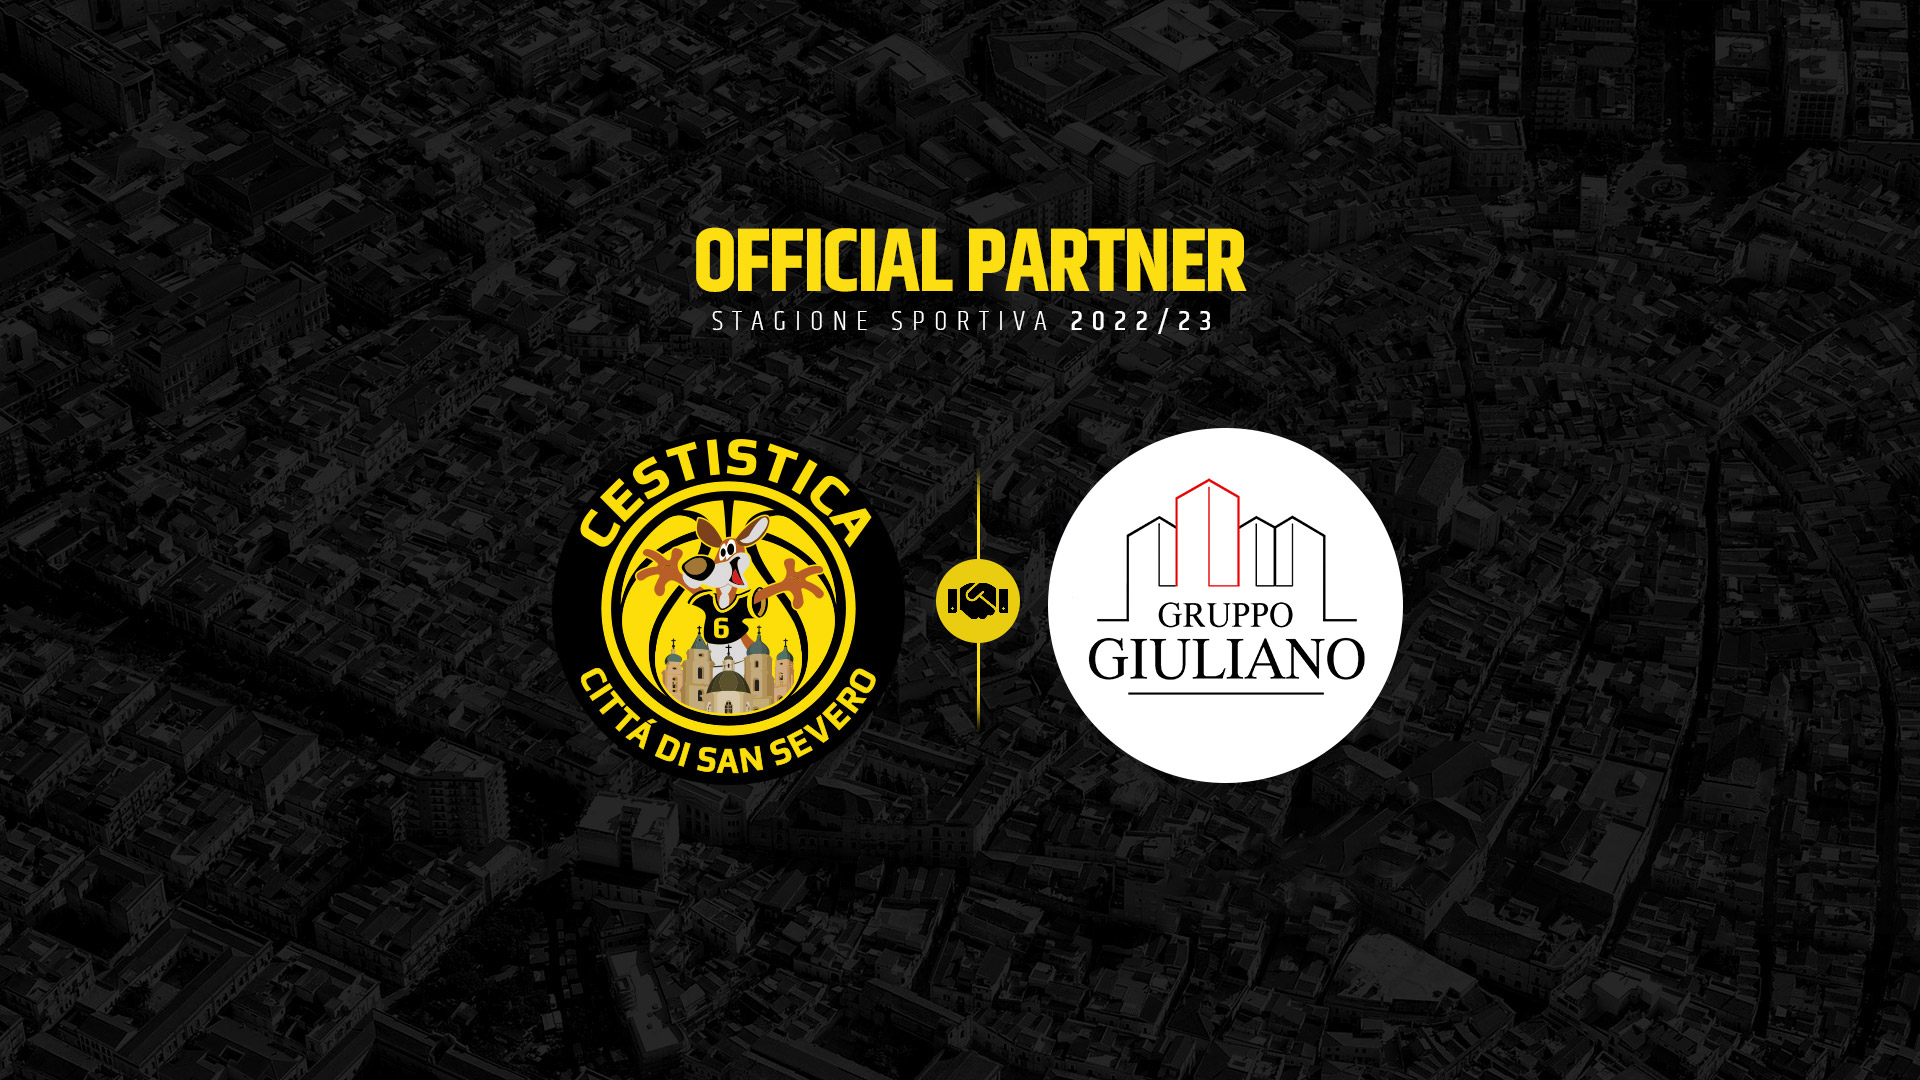 Un nuovo ingresso nella rete commerciale giallonera: benvenuto all’azienda Gruppo Giuliano!